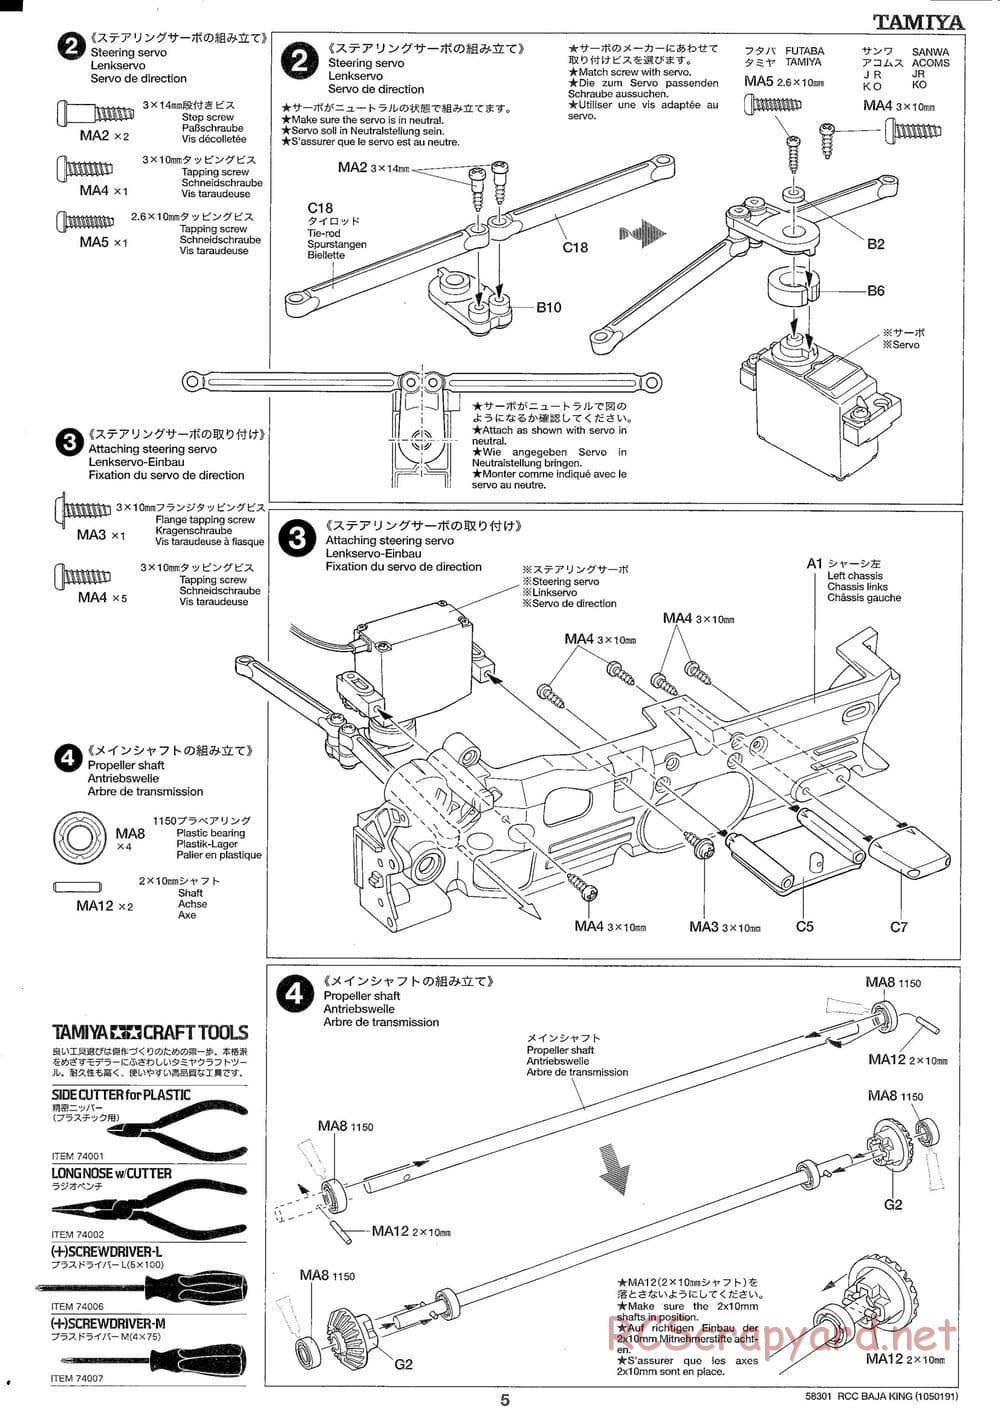 Tamiya - Baja King - TL-01B Chassis - Manual - Page 5